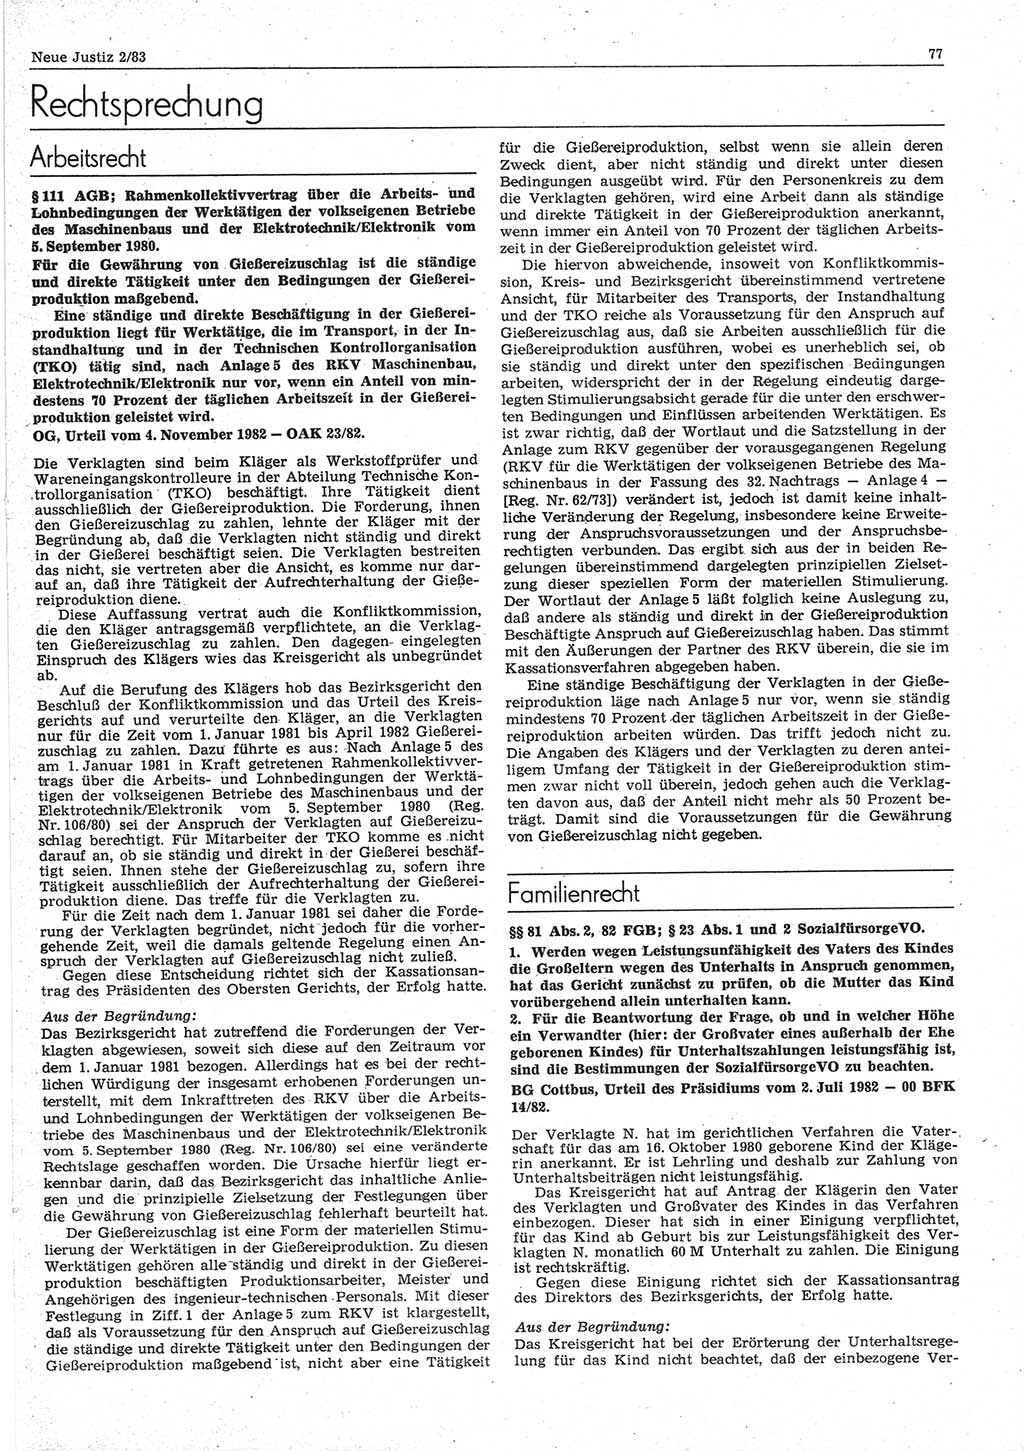 Neue Justiz (NJ), Zeitschrift für sozialistisches Recht und Gesetzlichkeit [Deutsche Demokratische Republik (DDR)], 37. Jahrgang 1983, Seite 77 (NJ DDR 1983, S. 77)